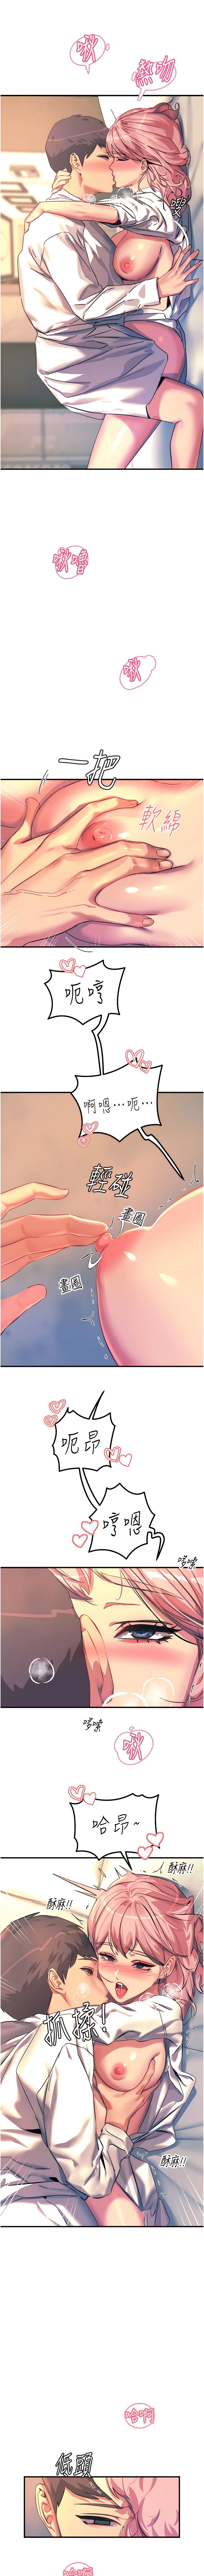 韩国污漫画 觸電大師 第71话 第一次的牛奶喷泉 7